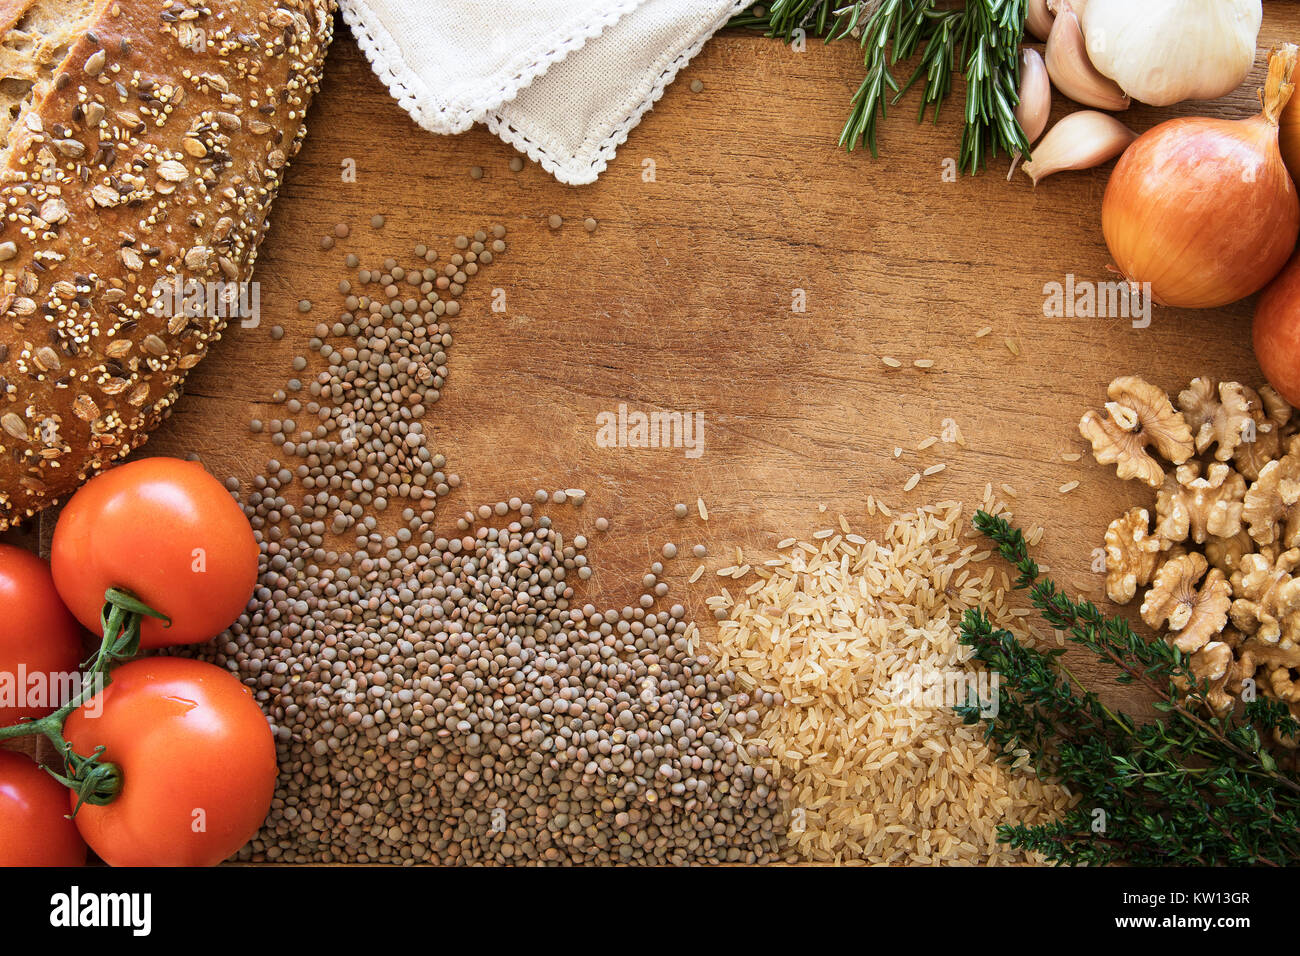 Châssis alimentation saine avec des légumes frais, des herbes et des céréales sur fond de bois rustique (vue de dessus). Banque D'Images